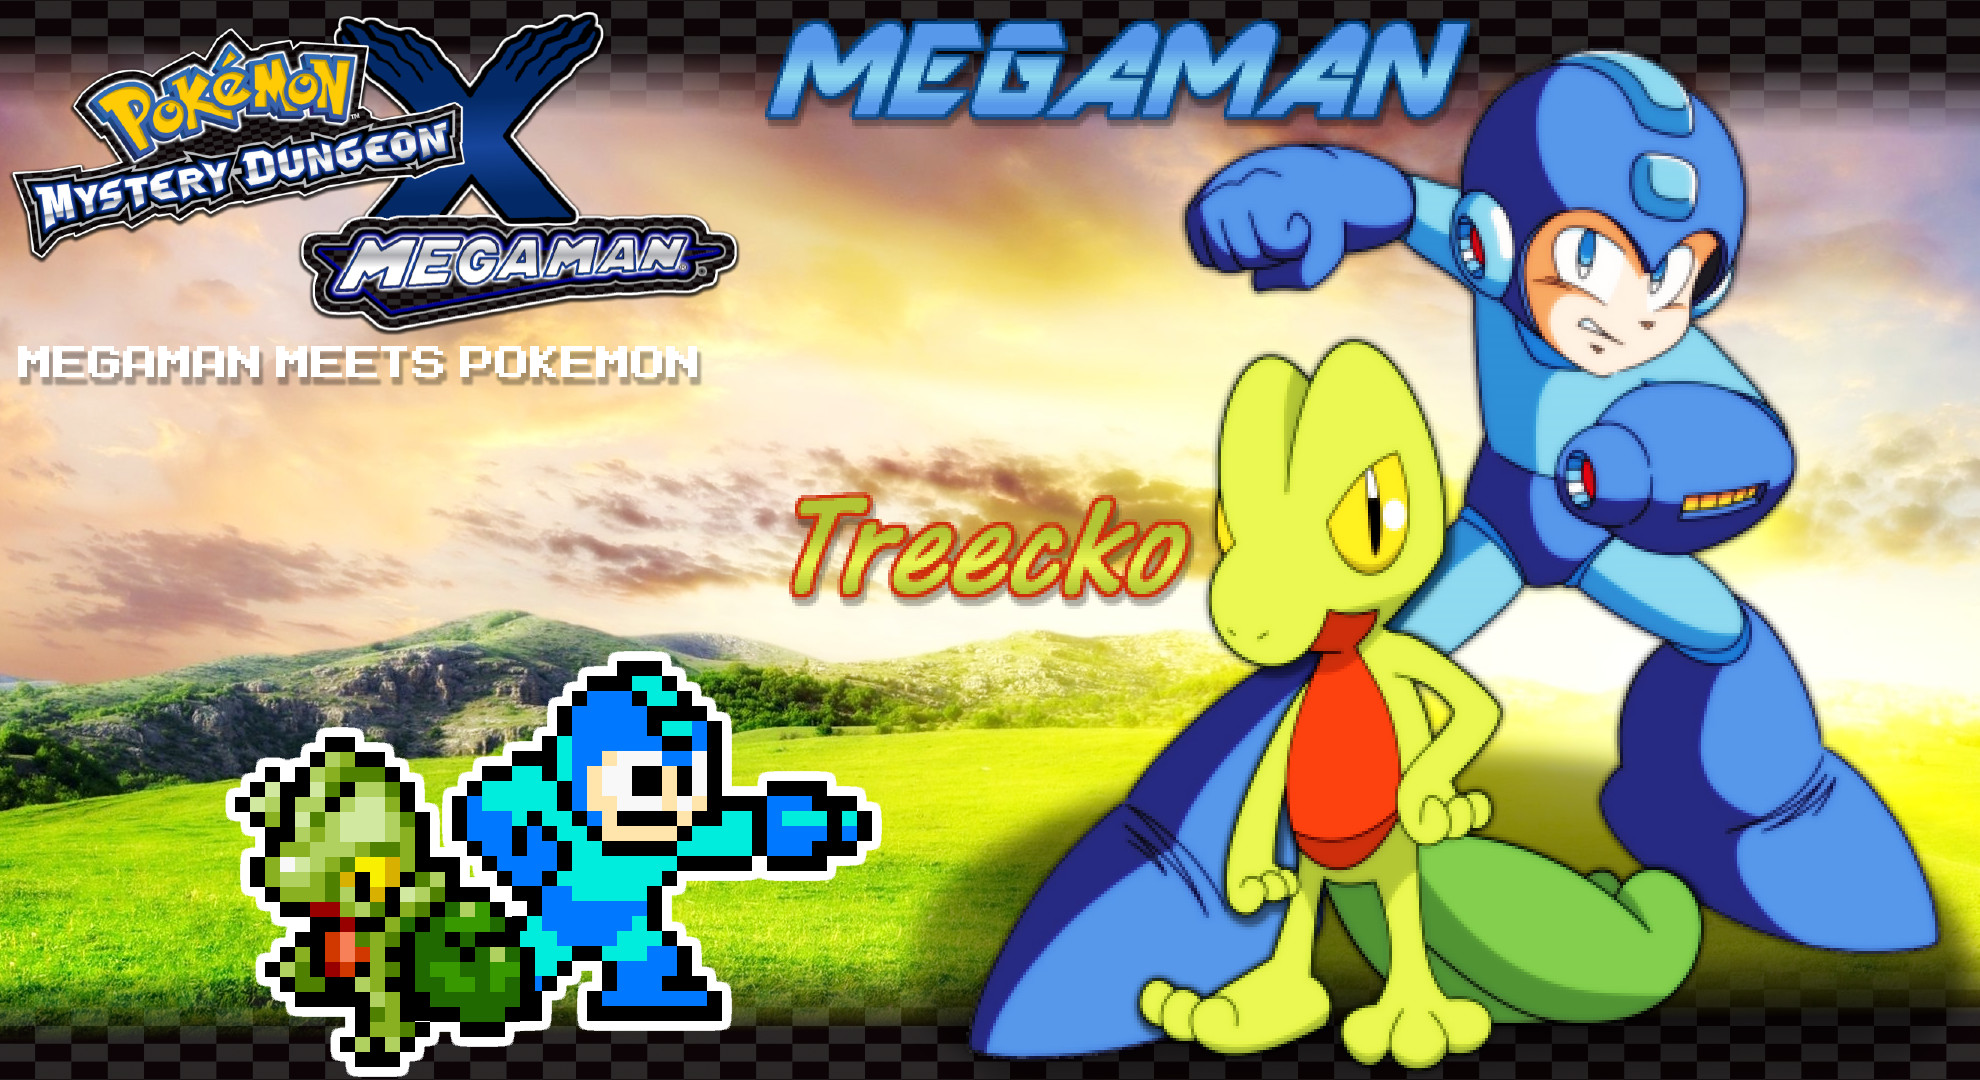 1980x1080 ... Megaman Treecko Wallpaper - PMD X MM by IcePony64